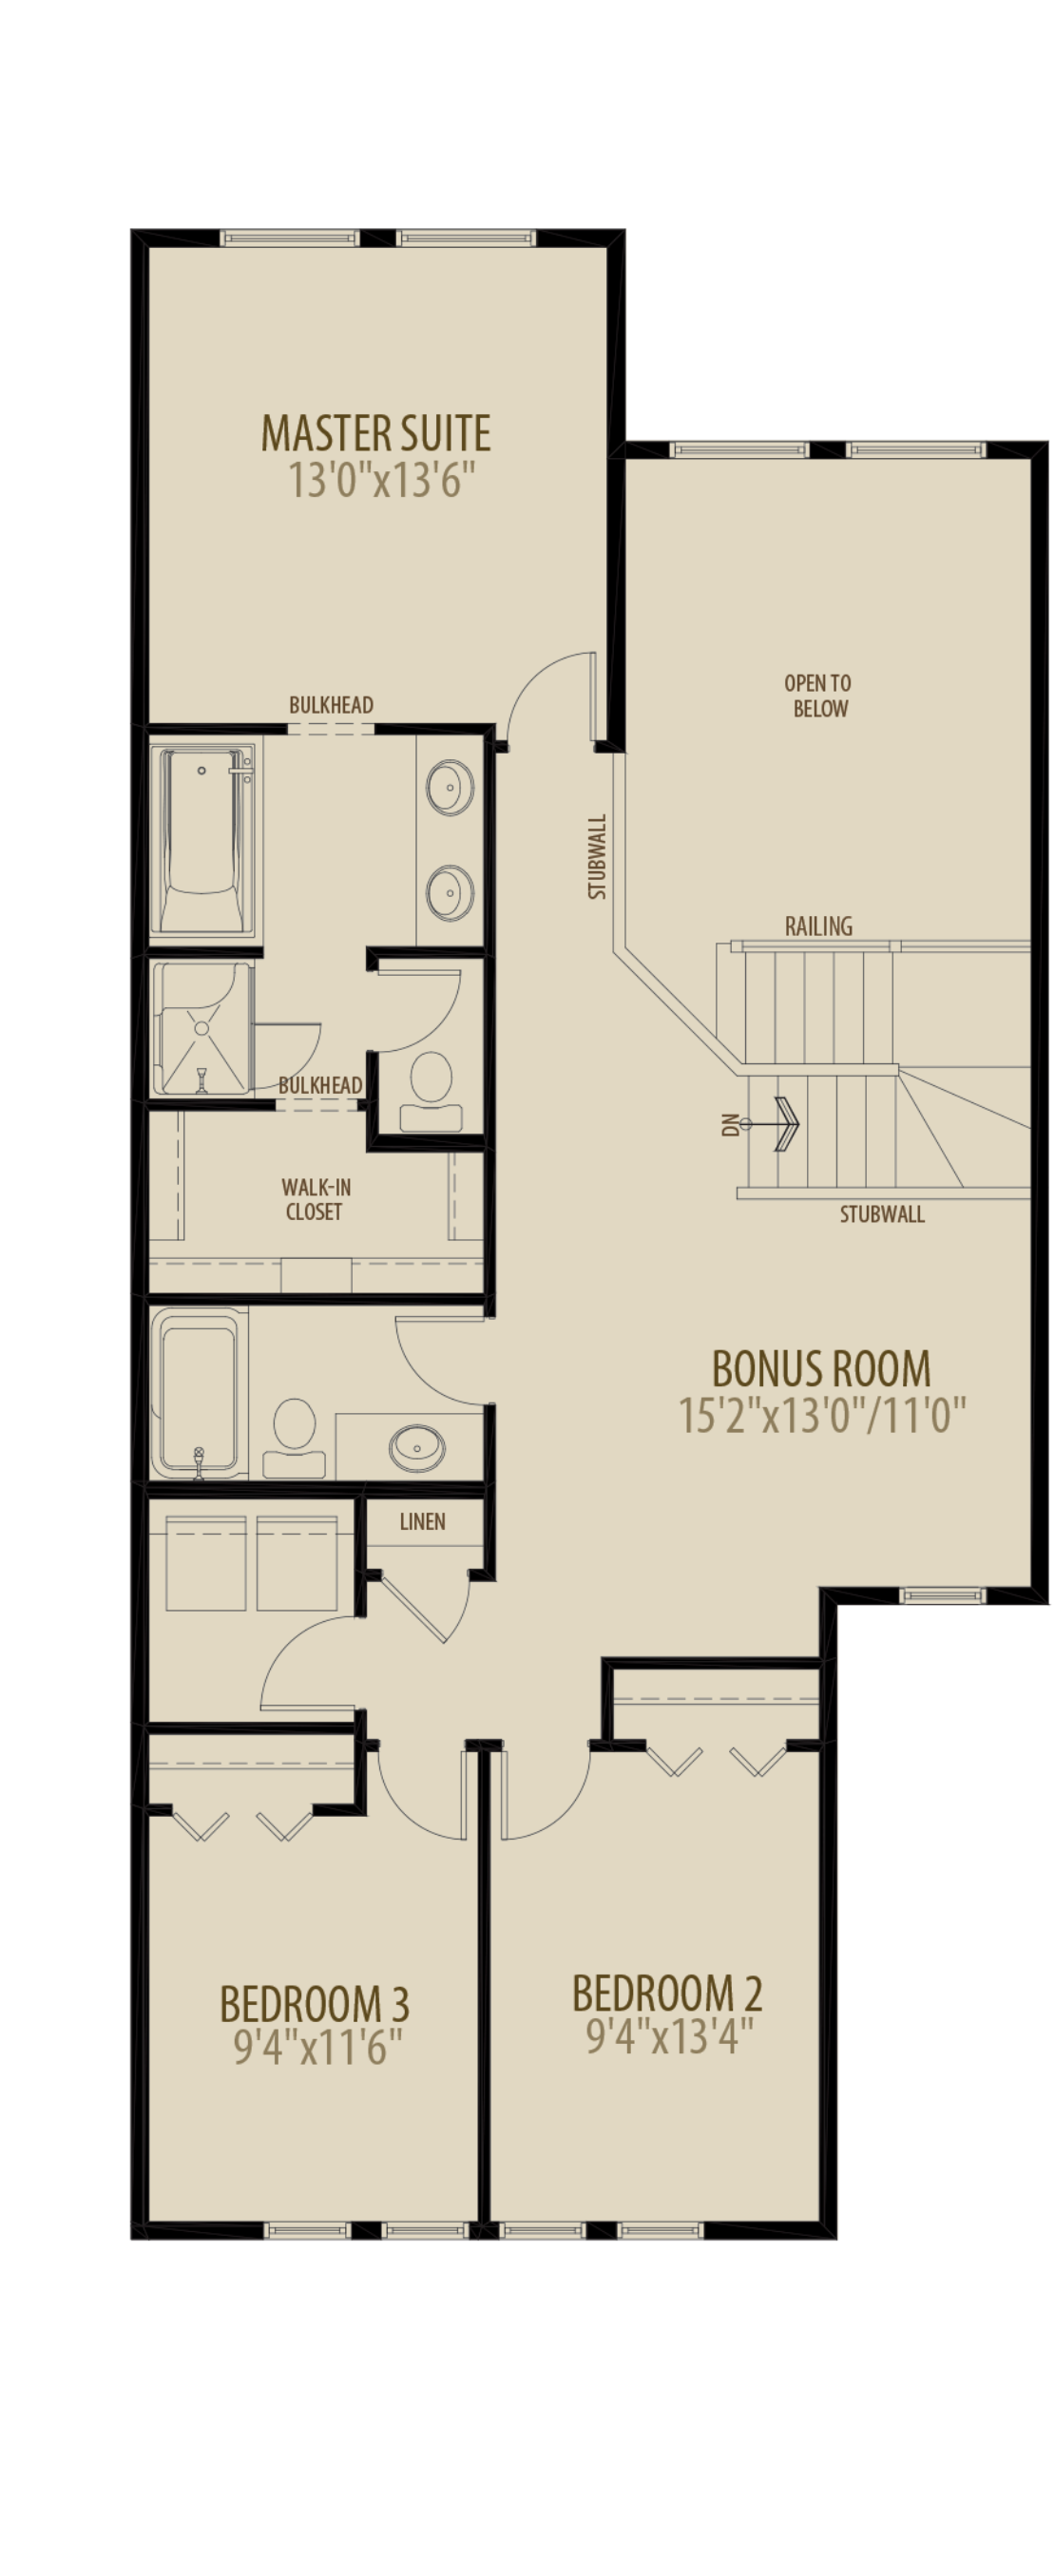 Open to below & Bonus Room (Reduces Upper Floor by 70 sq ft)